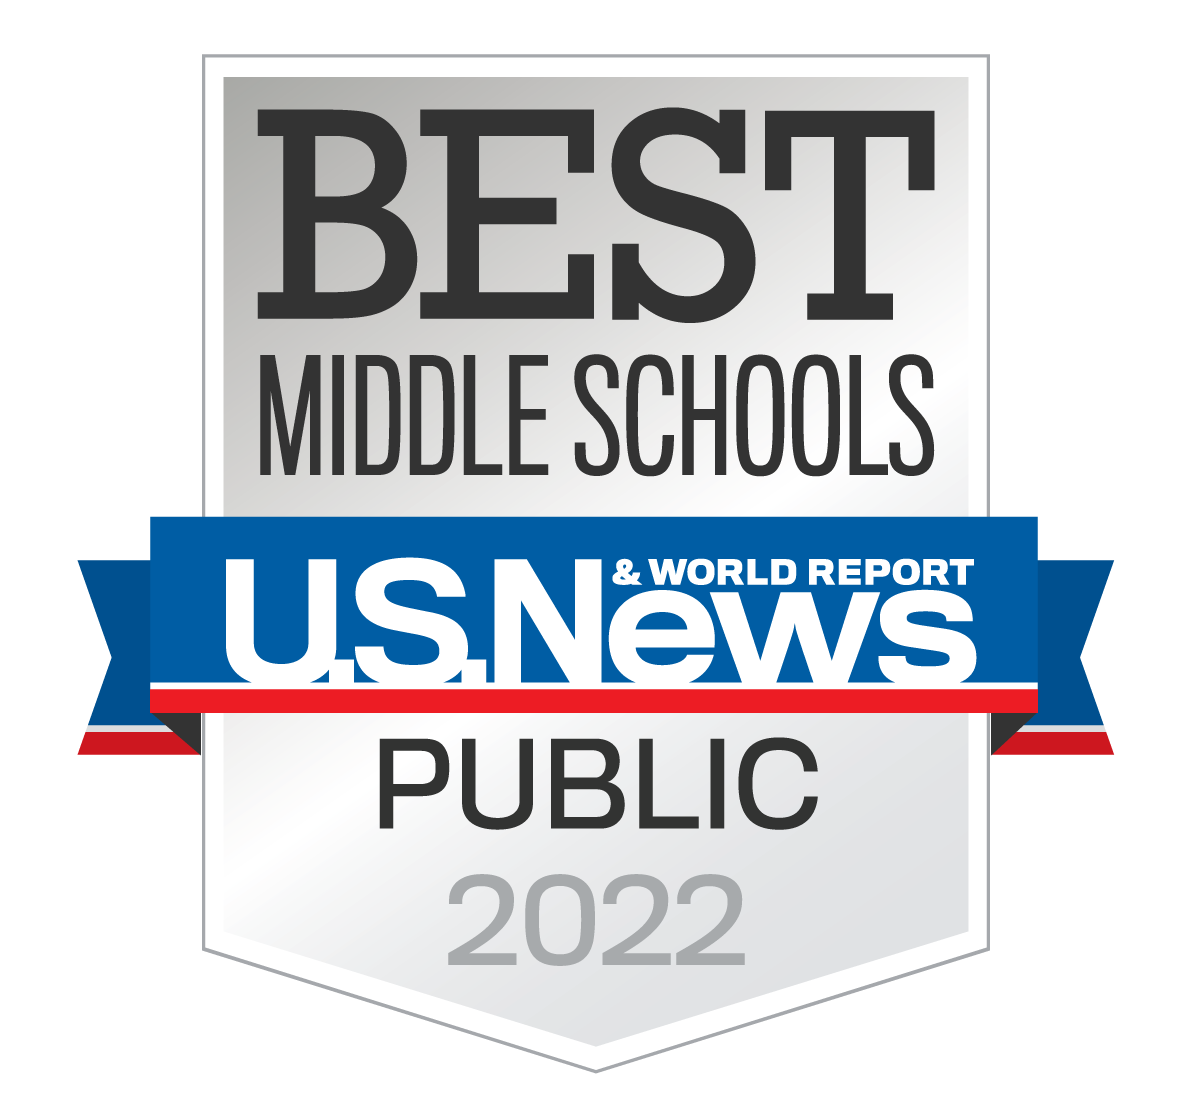 best middle schools us news public 2022